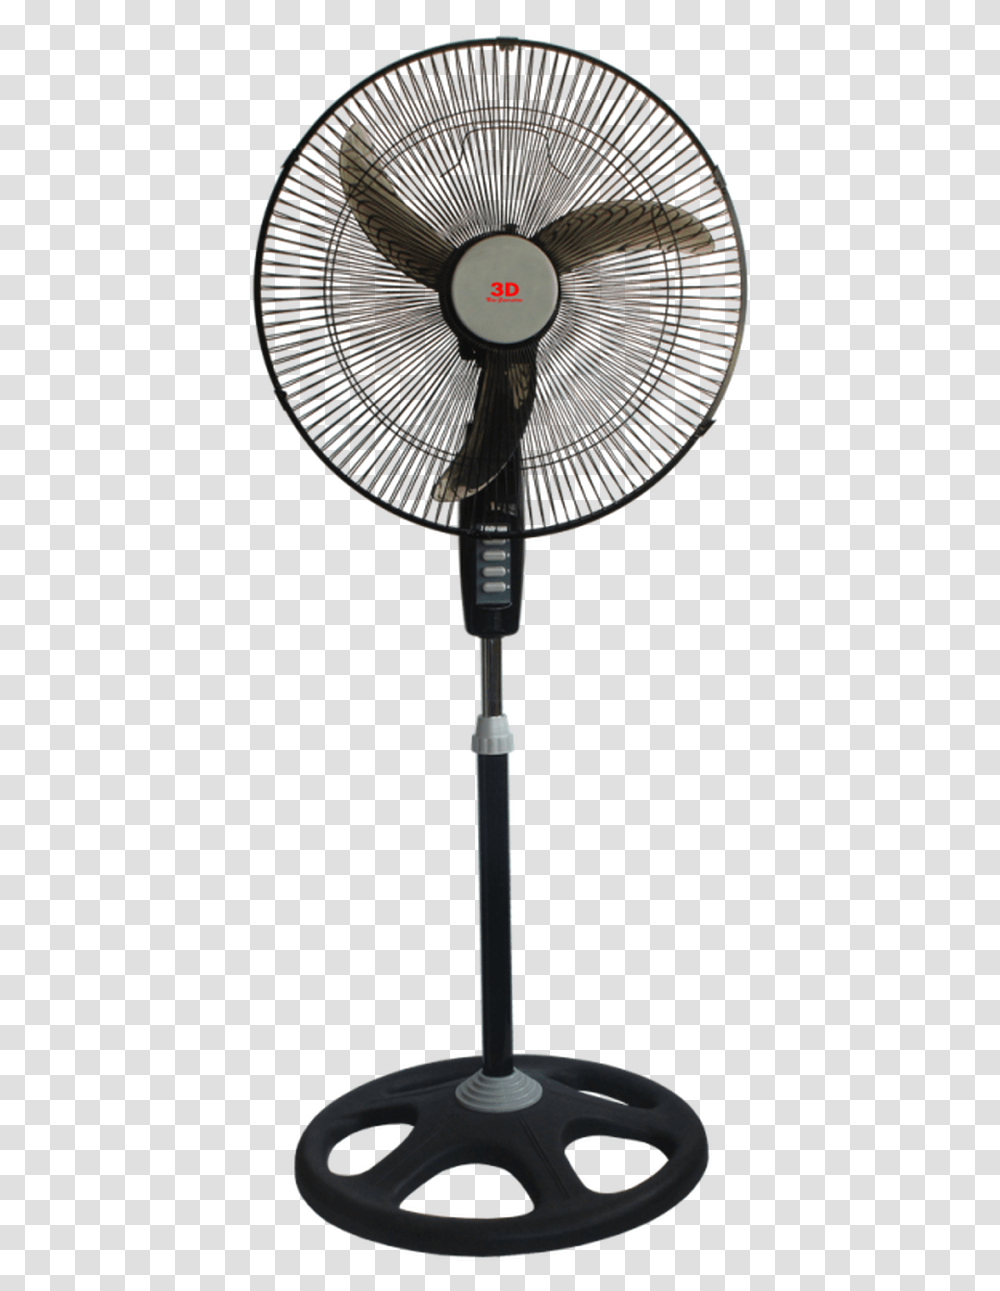 3d Stand Fan, Lamp, Electric Fan Transparent Png